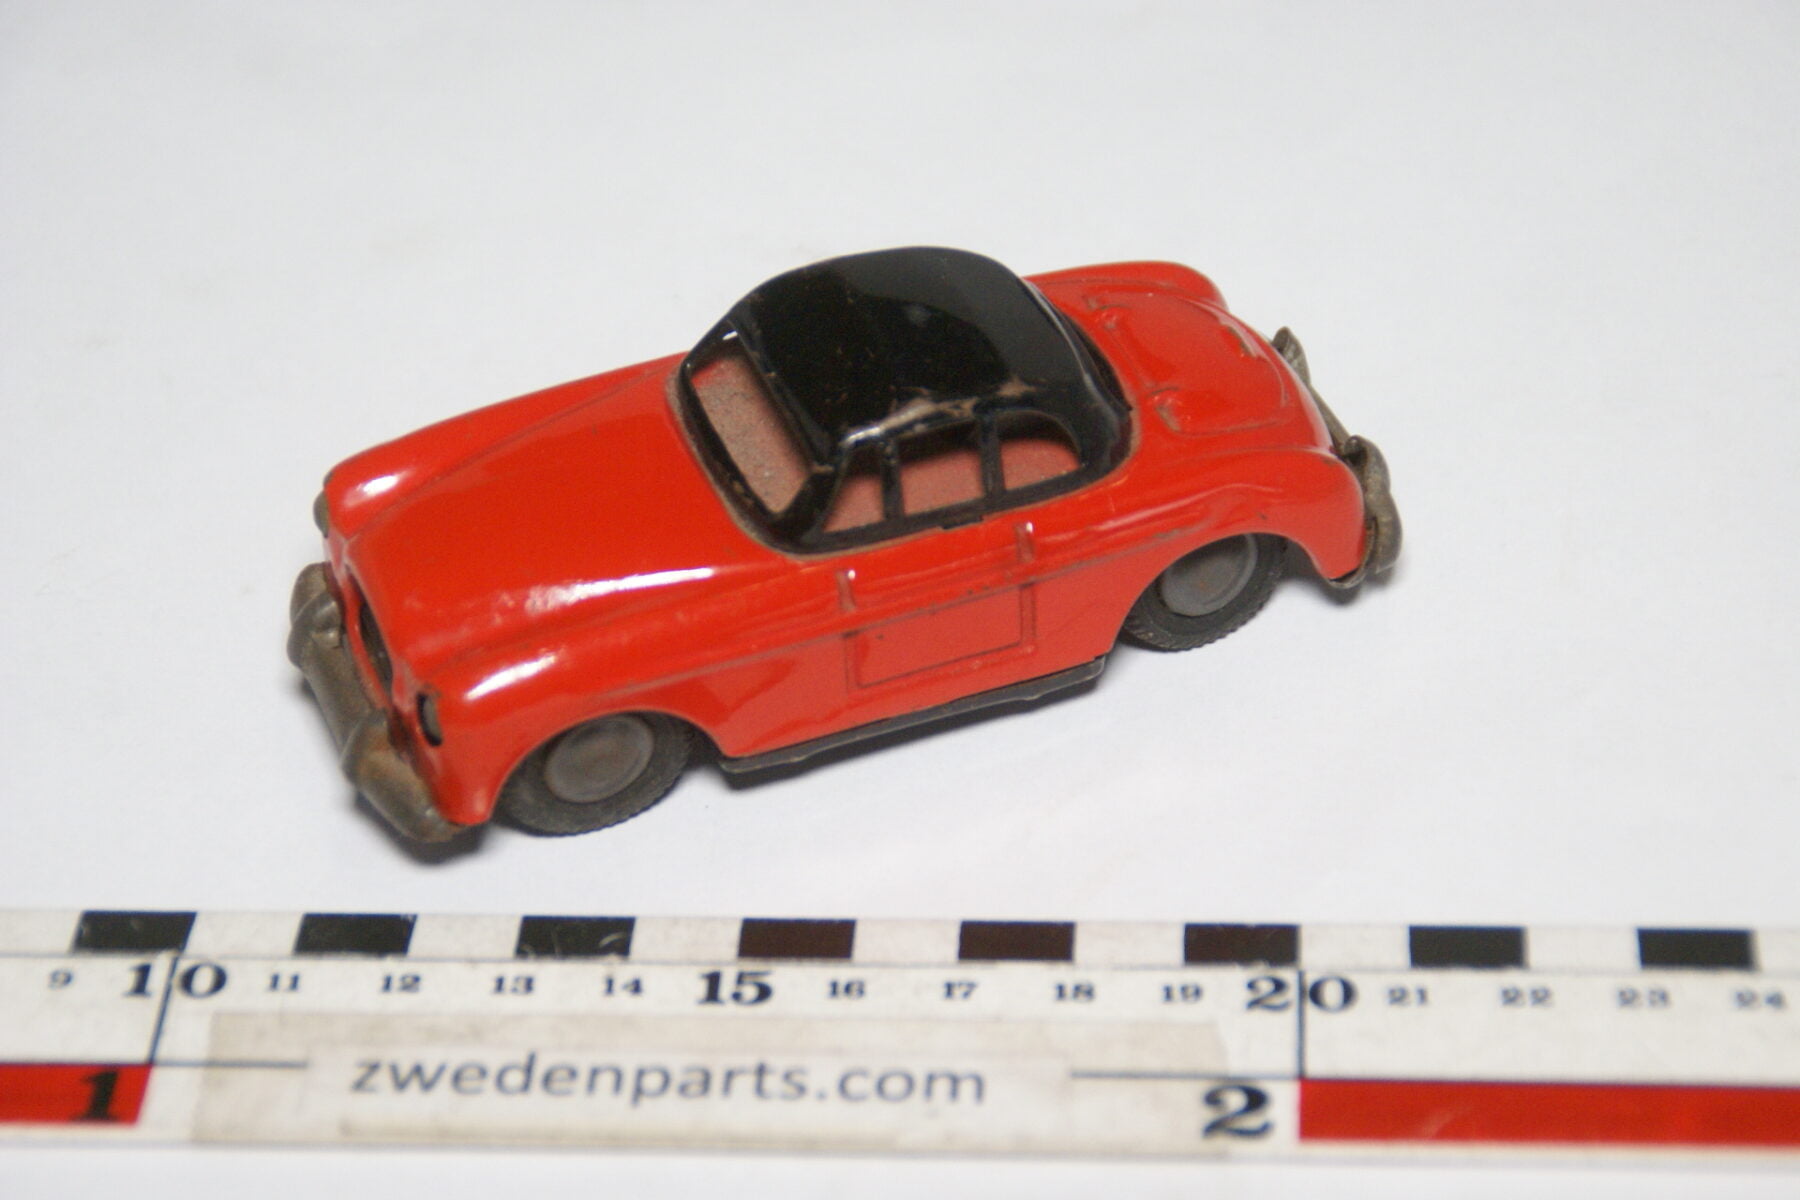 DSC02161 ca. 1957 miniatuur Volvo P1900 Sport rood zwart ca105 mm lang, blik zeer goede staat-3760a256